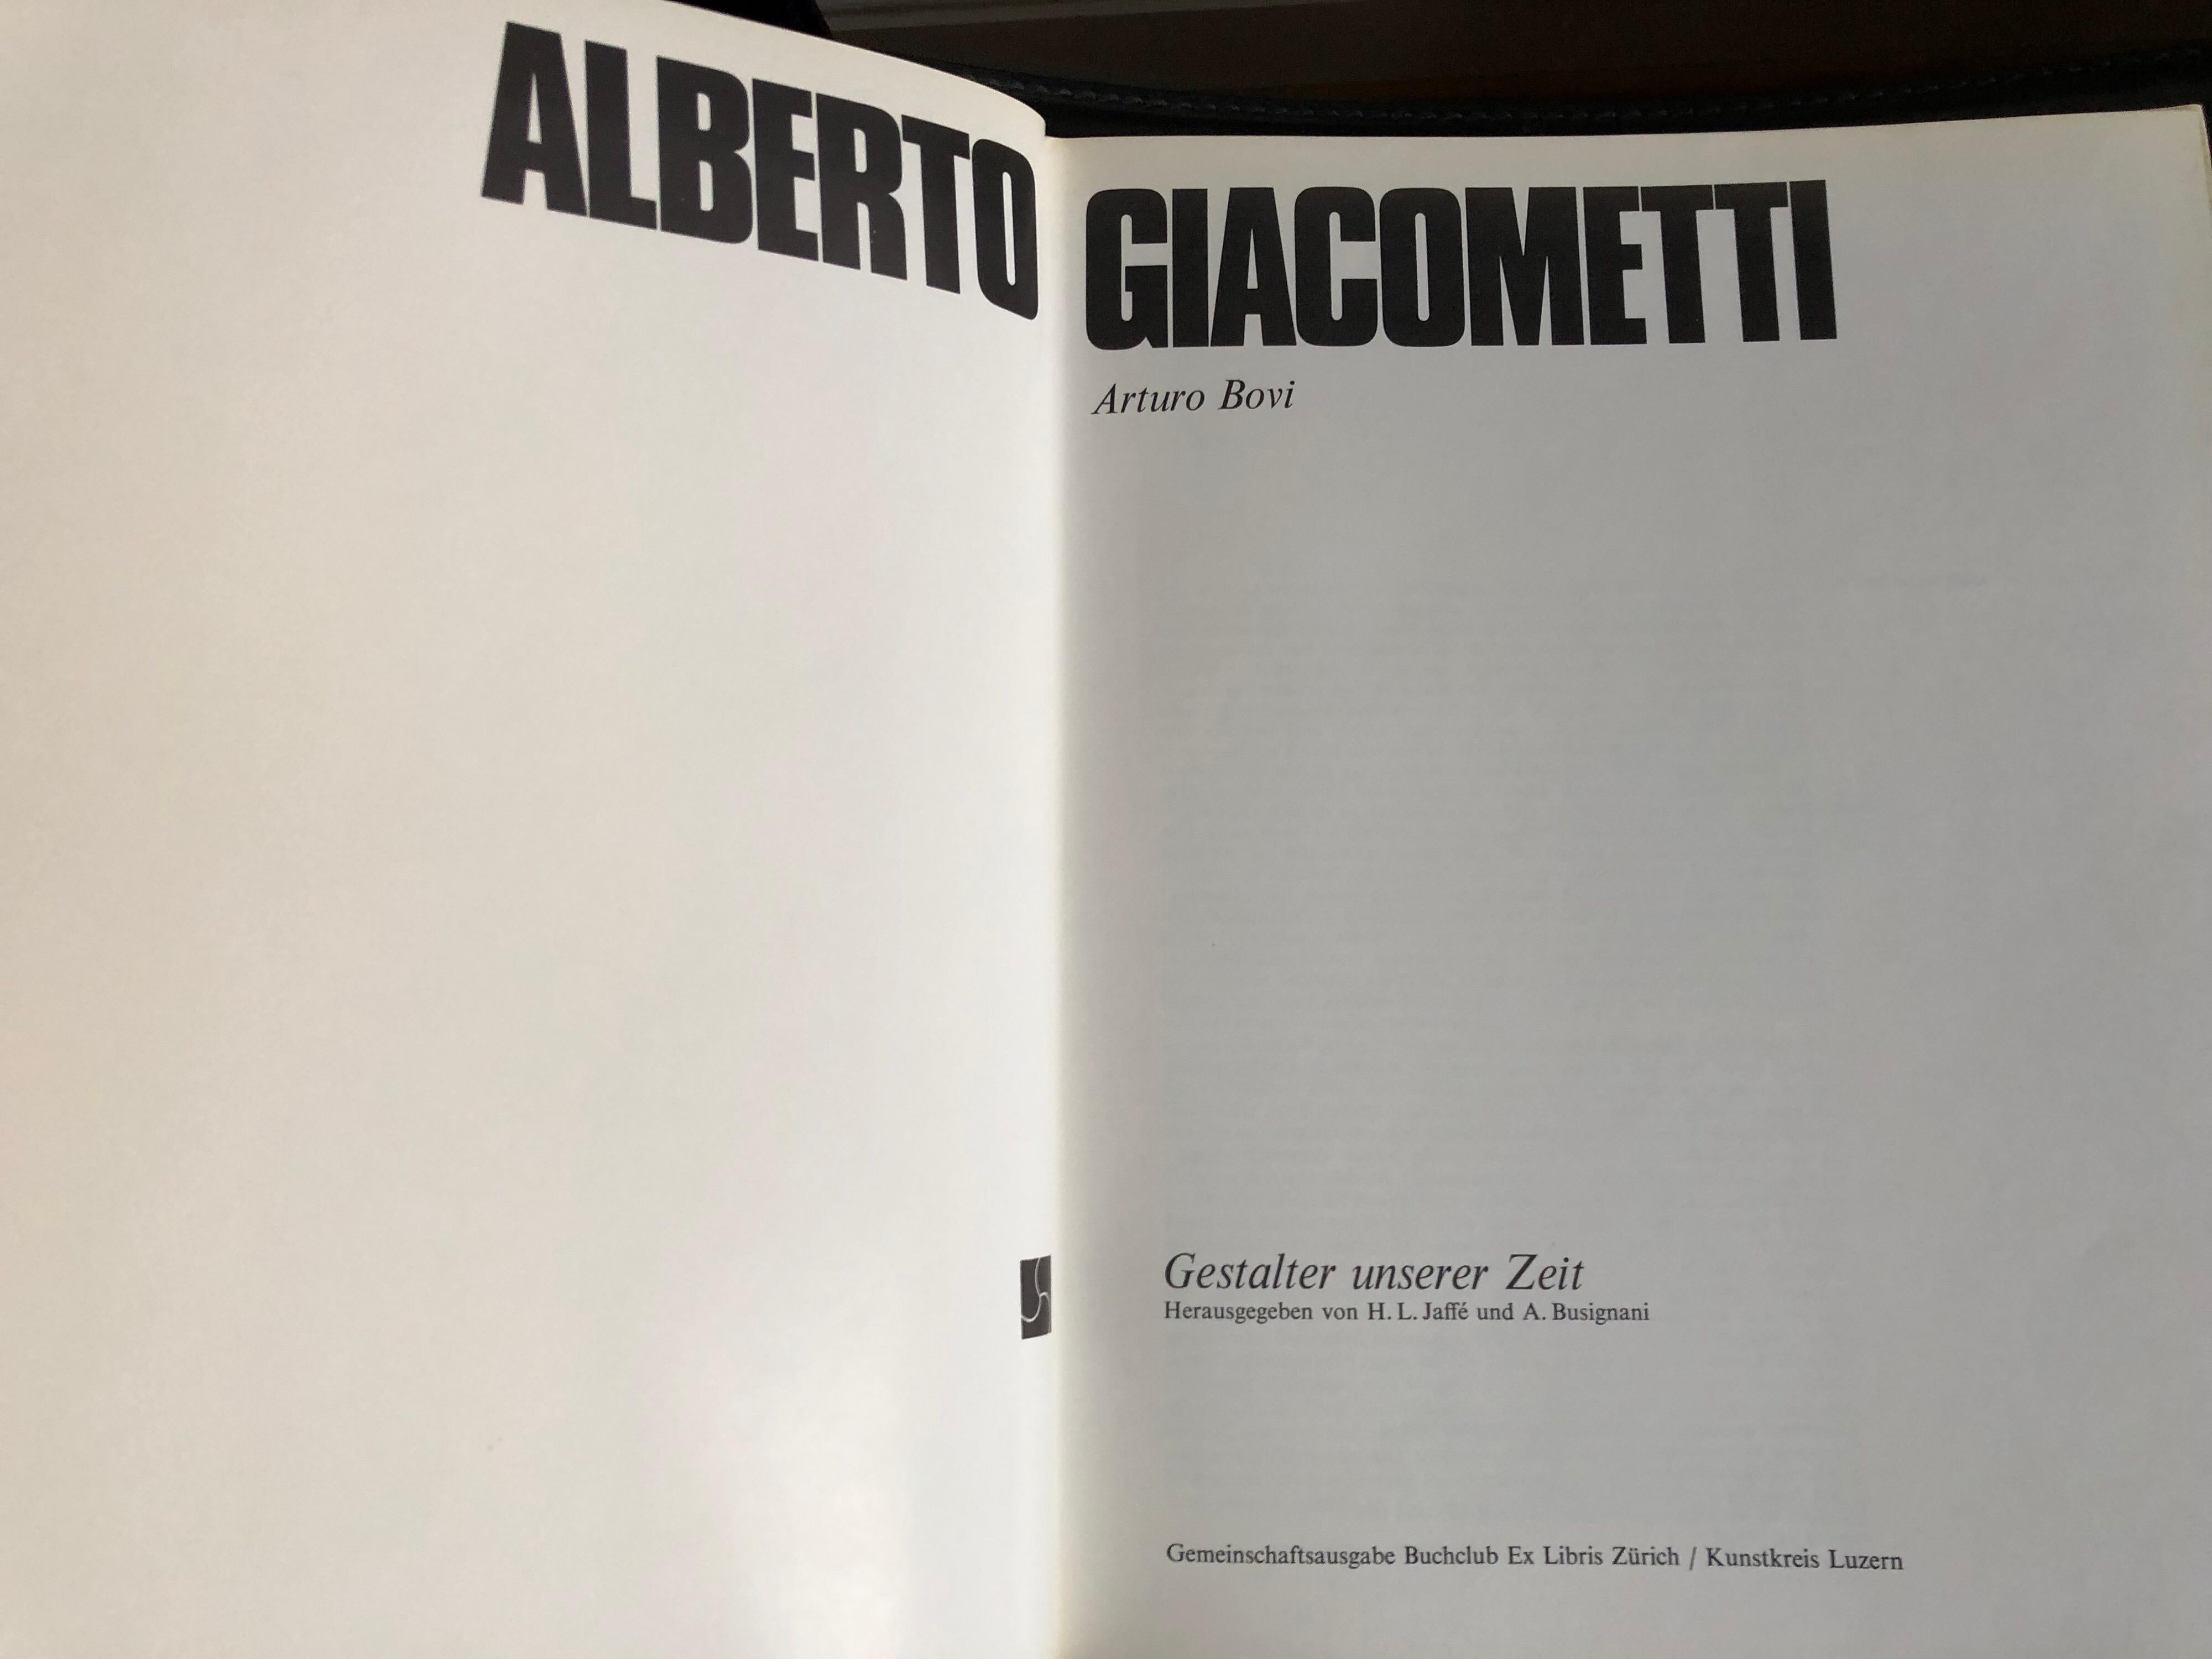 Alberto Giacometti by Arturo Bovi Album, Switzerland 1974, measures: 31 x 24.4 x 1.4 cm.